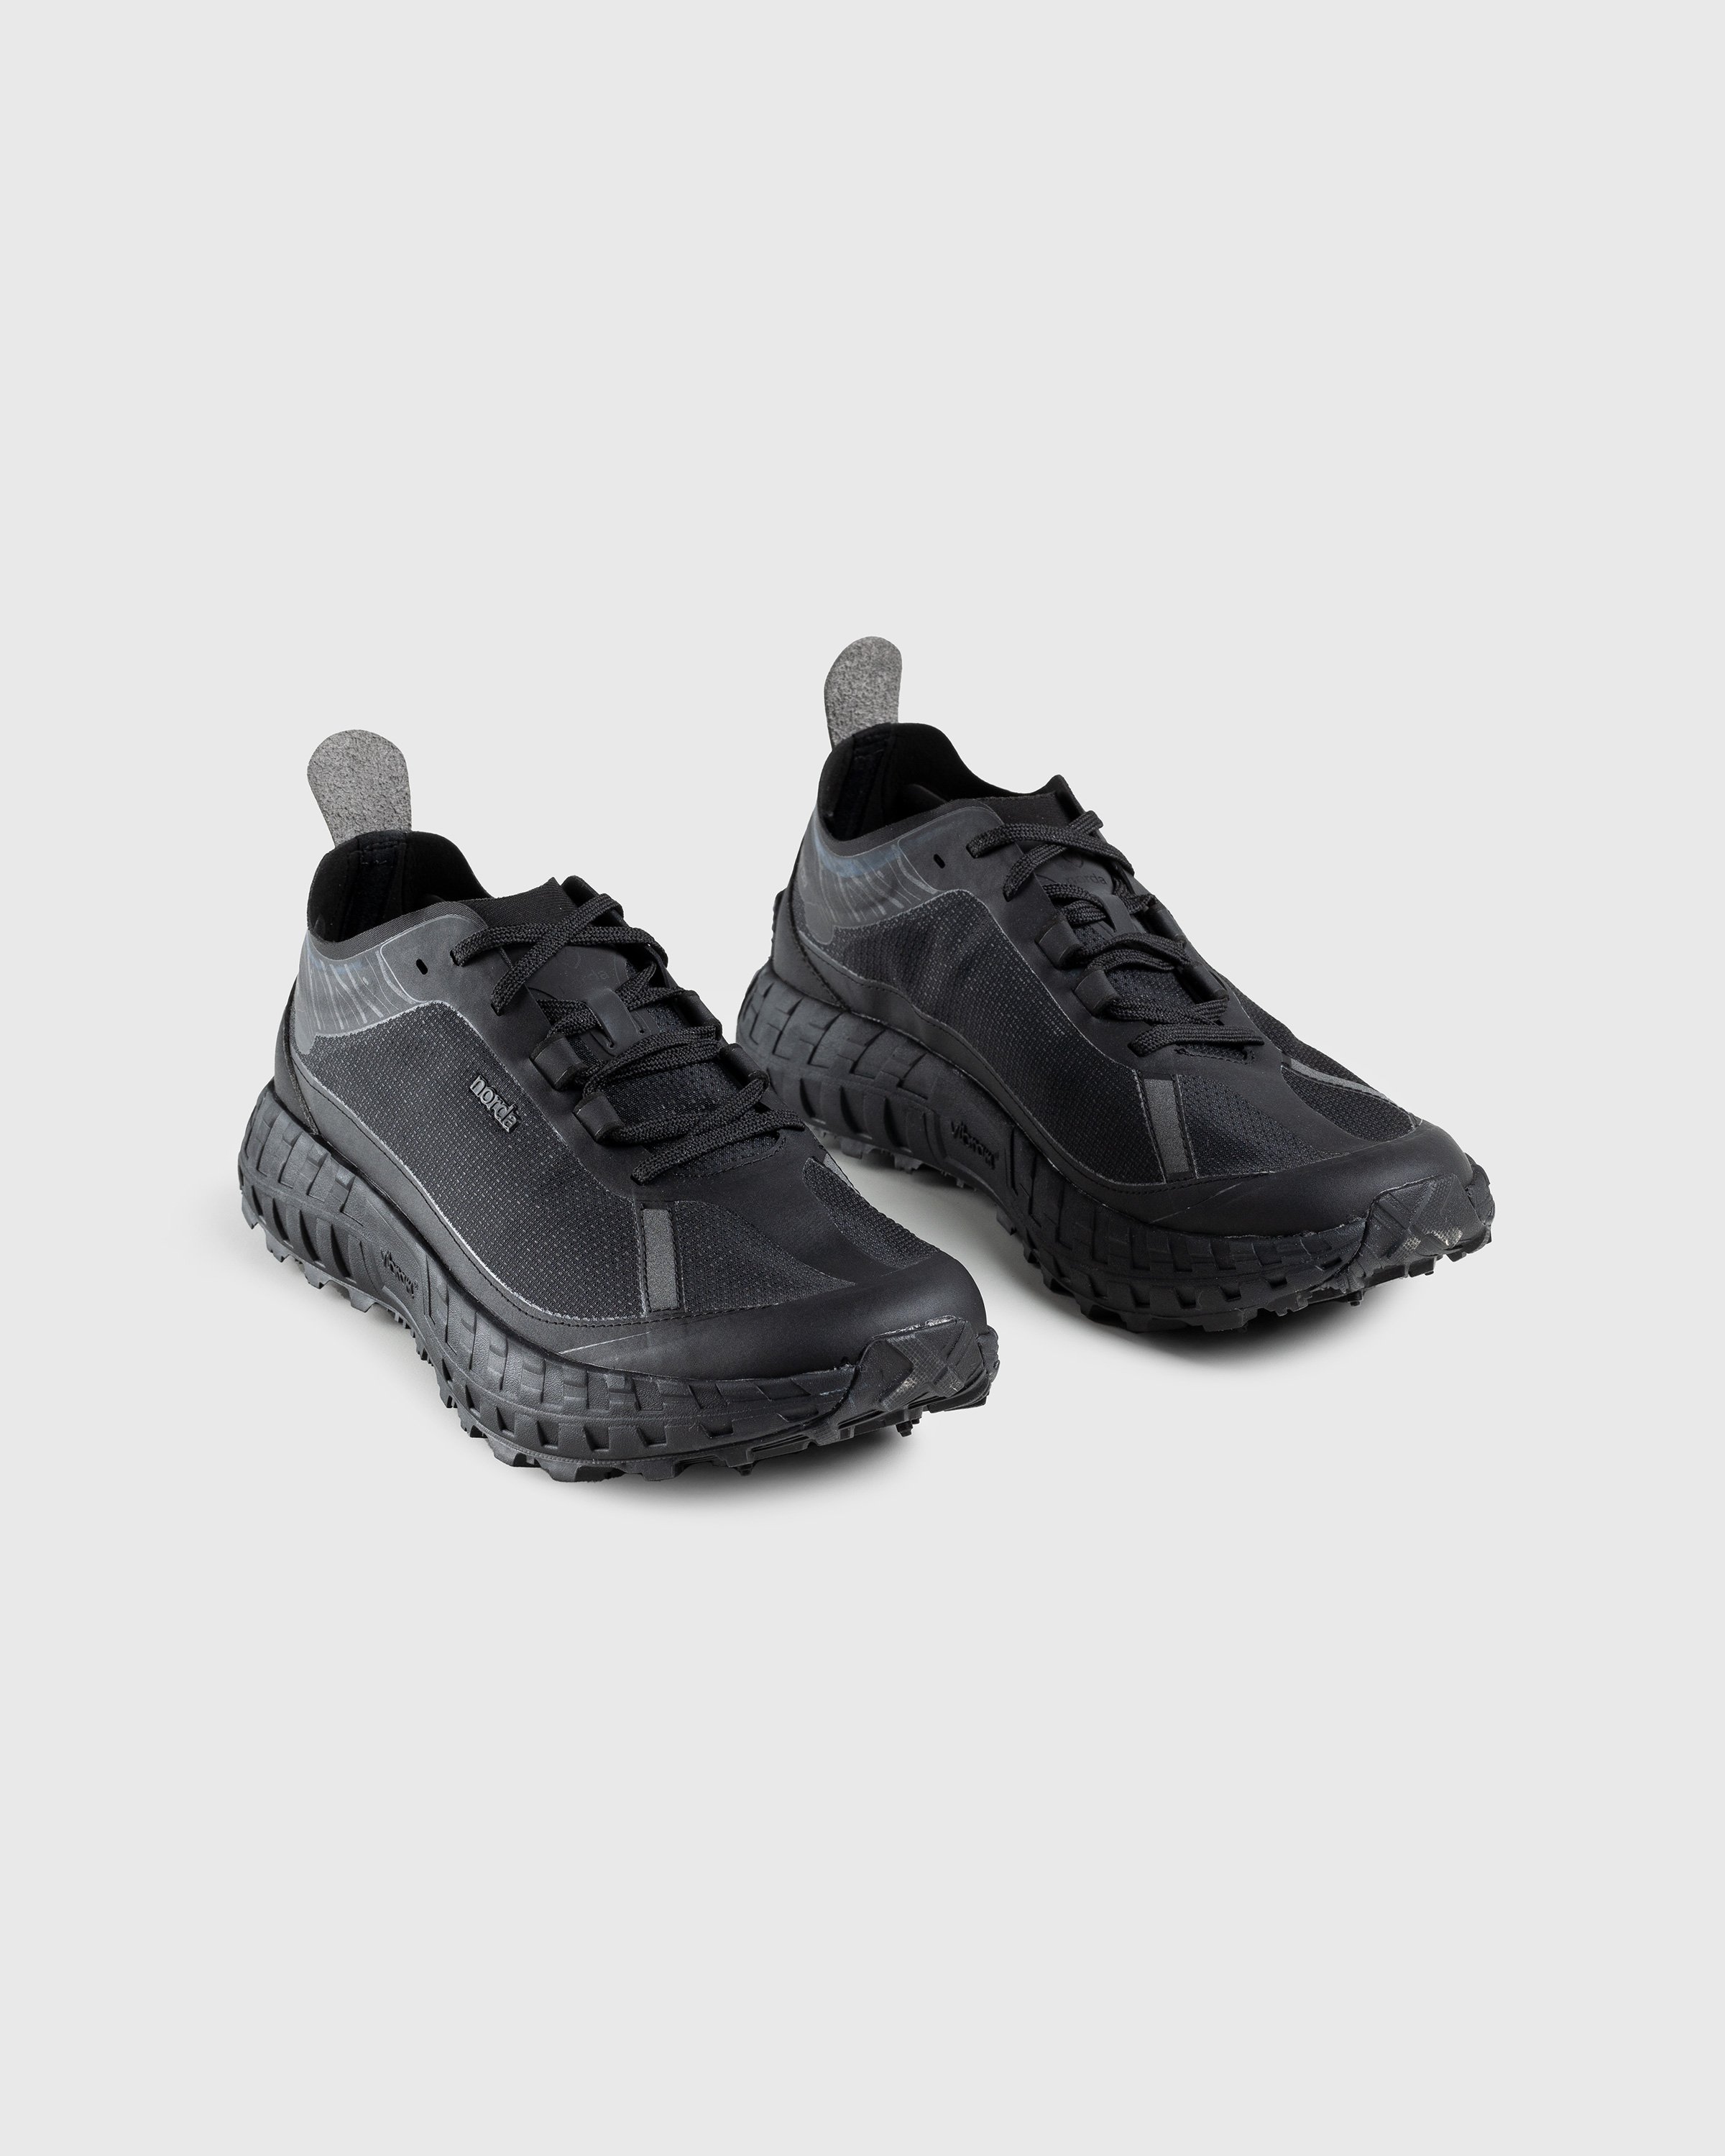 Norda - 001 M Stealth Black - Footwear - Black - Image 3